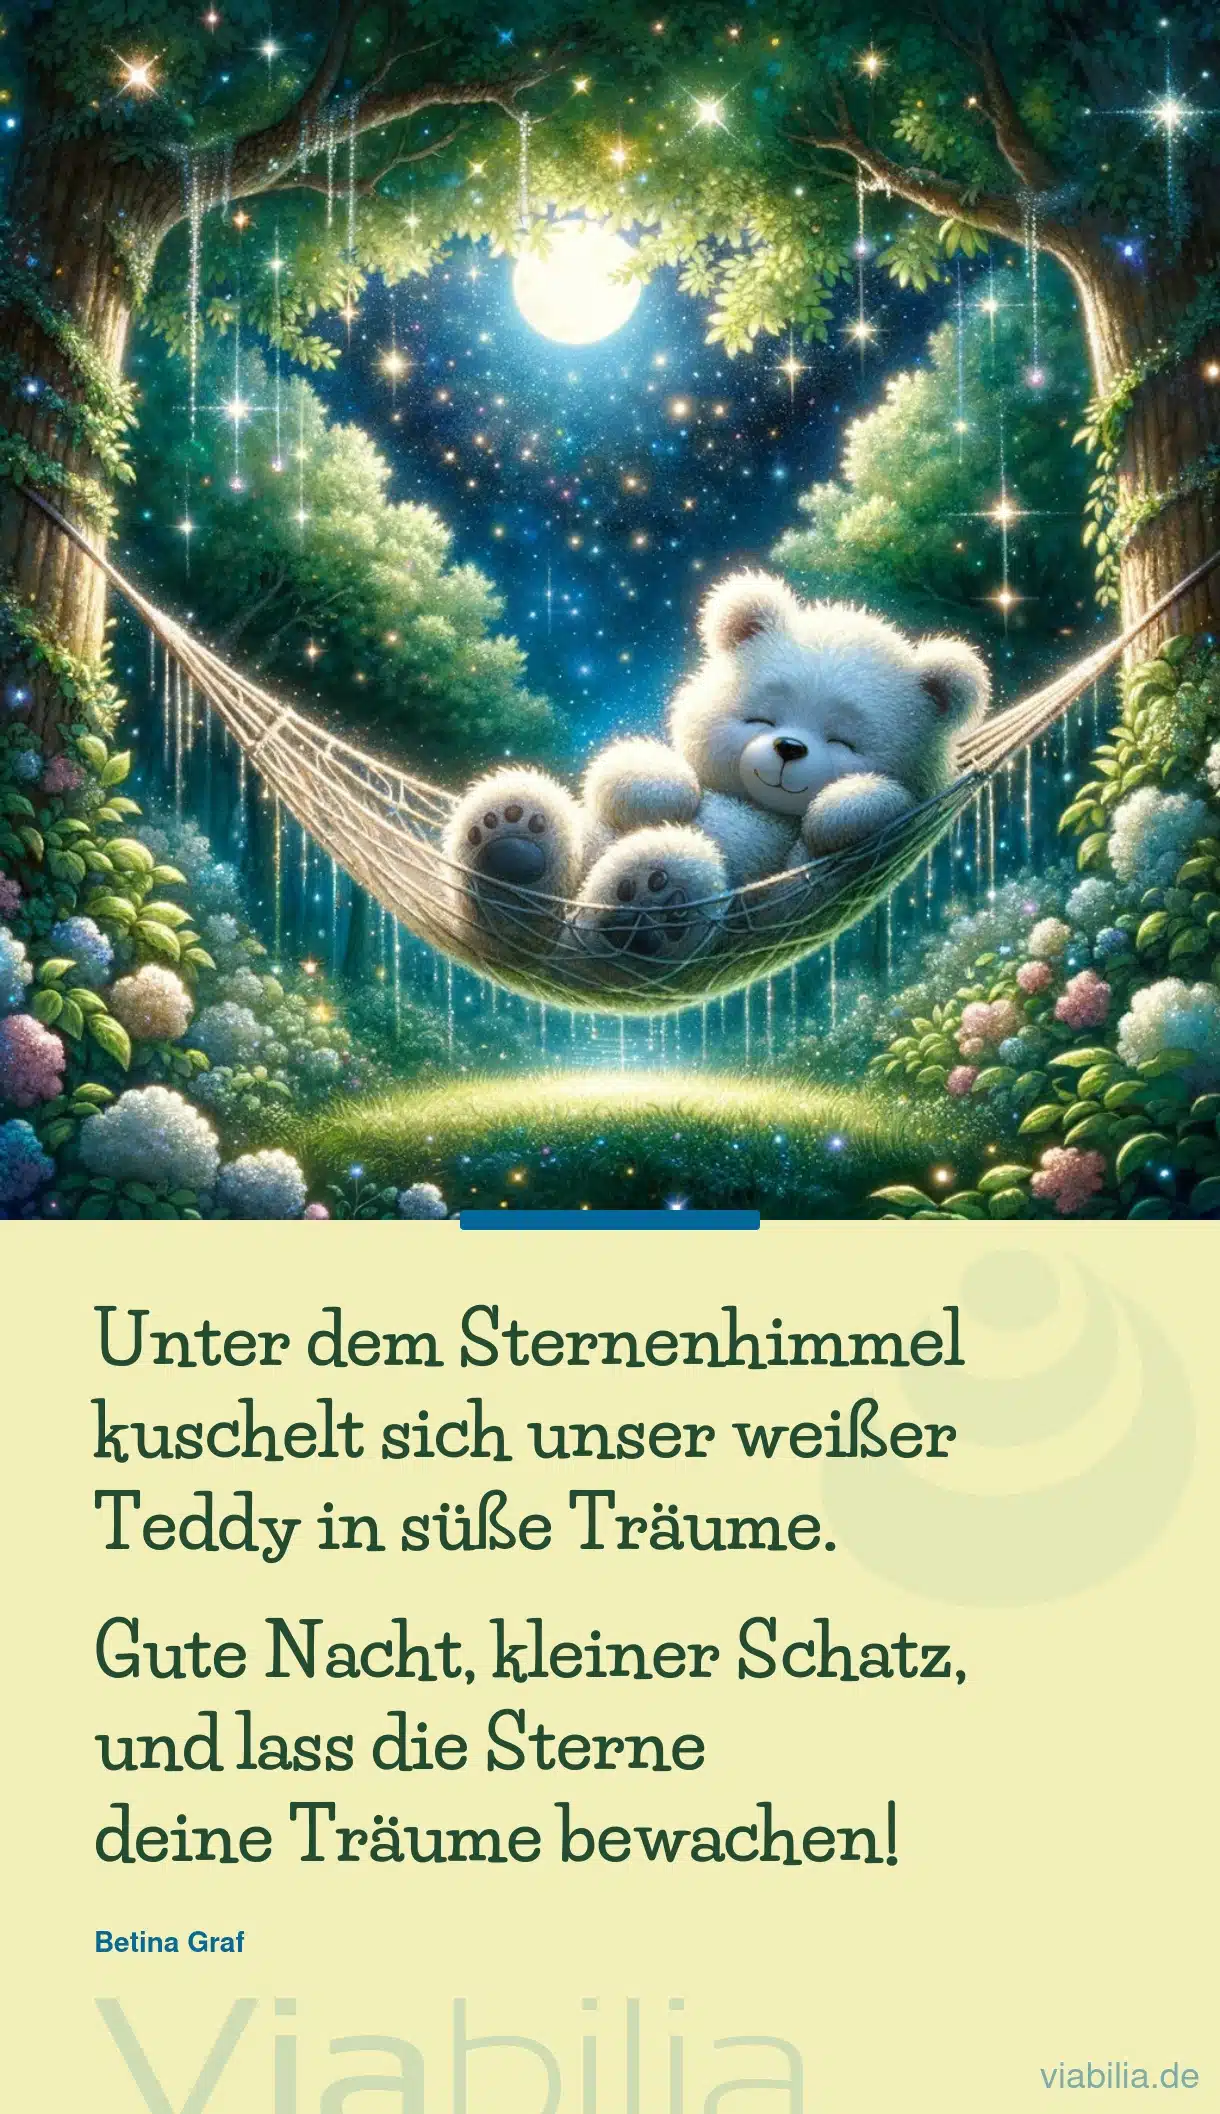 Gute Nacht Bild mit Teddybär: gute Nacht, kleiner Schatz